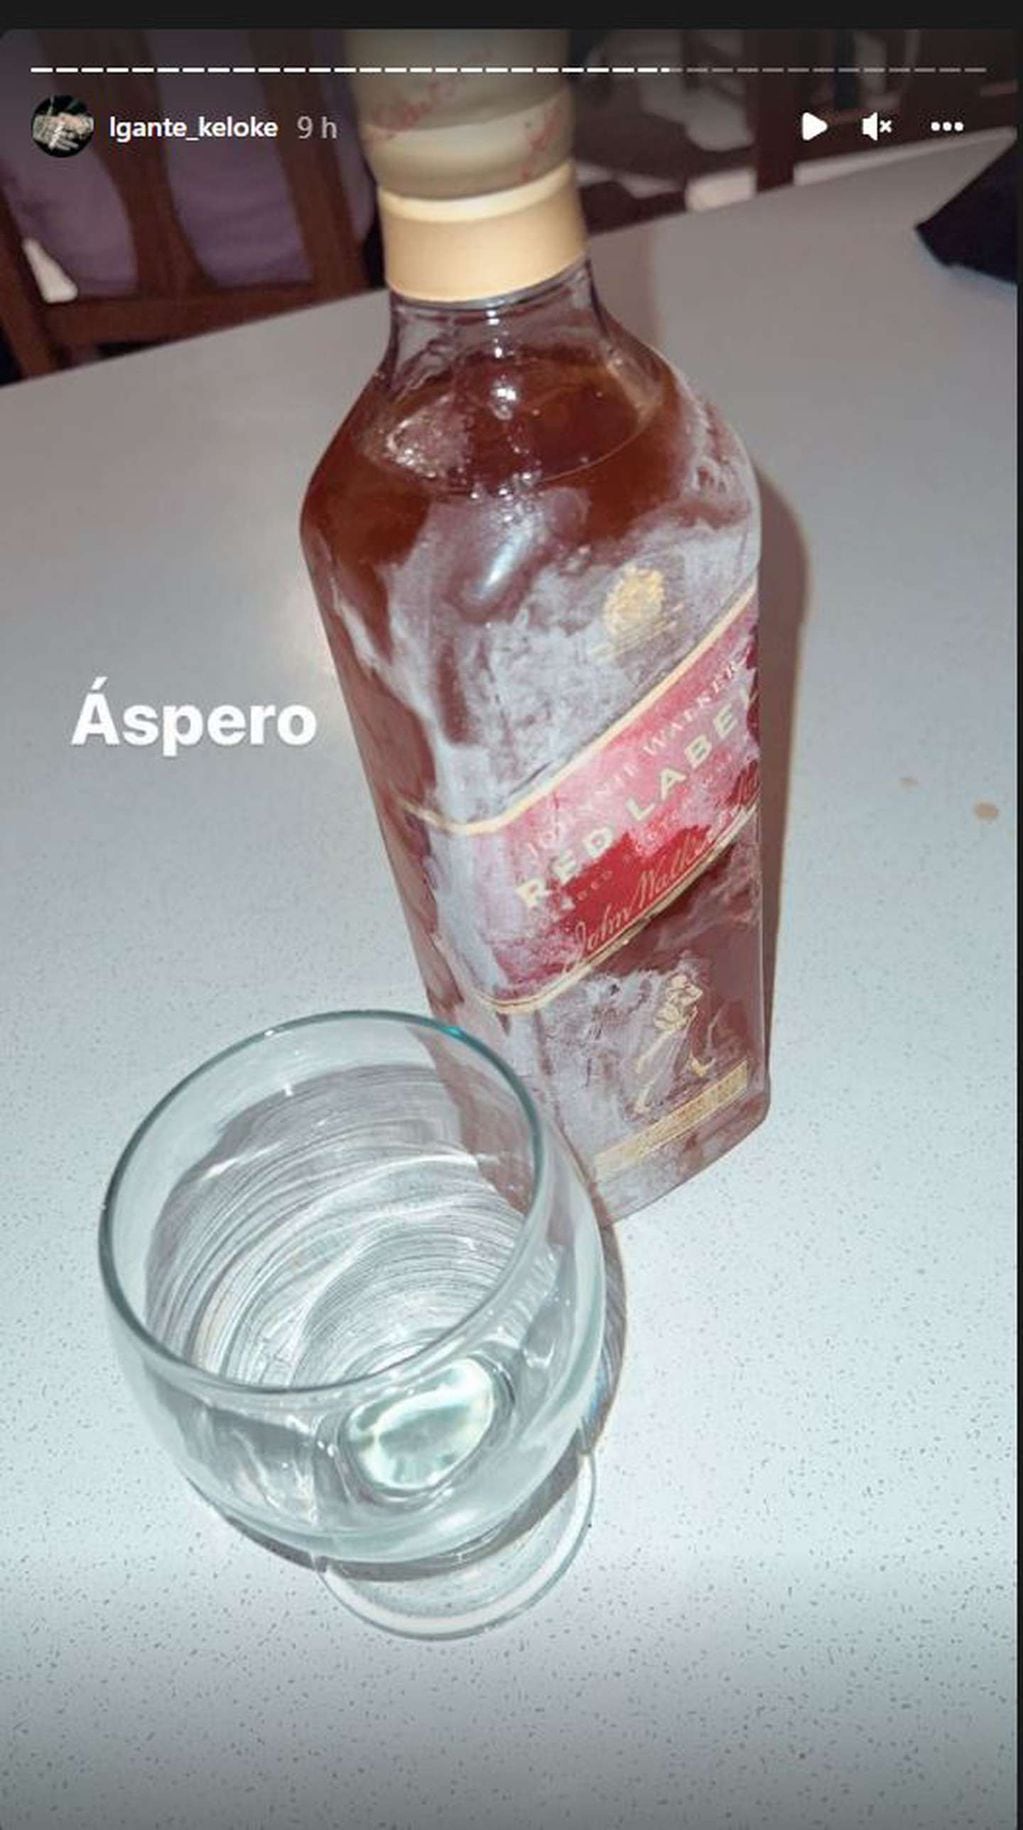 La foto que subió L-Gante junto al comentario "Áspero" en referencia a la botella congelada de whisky.